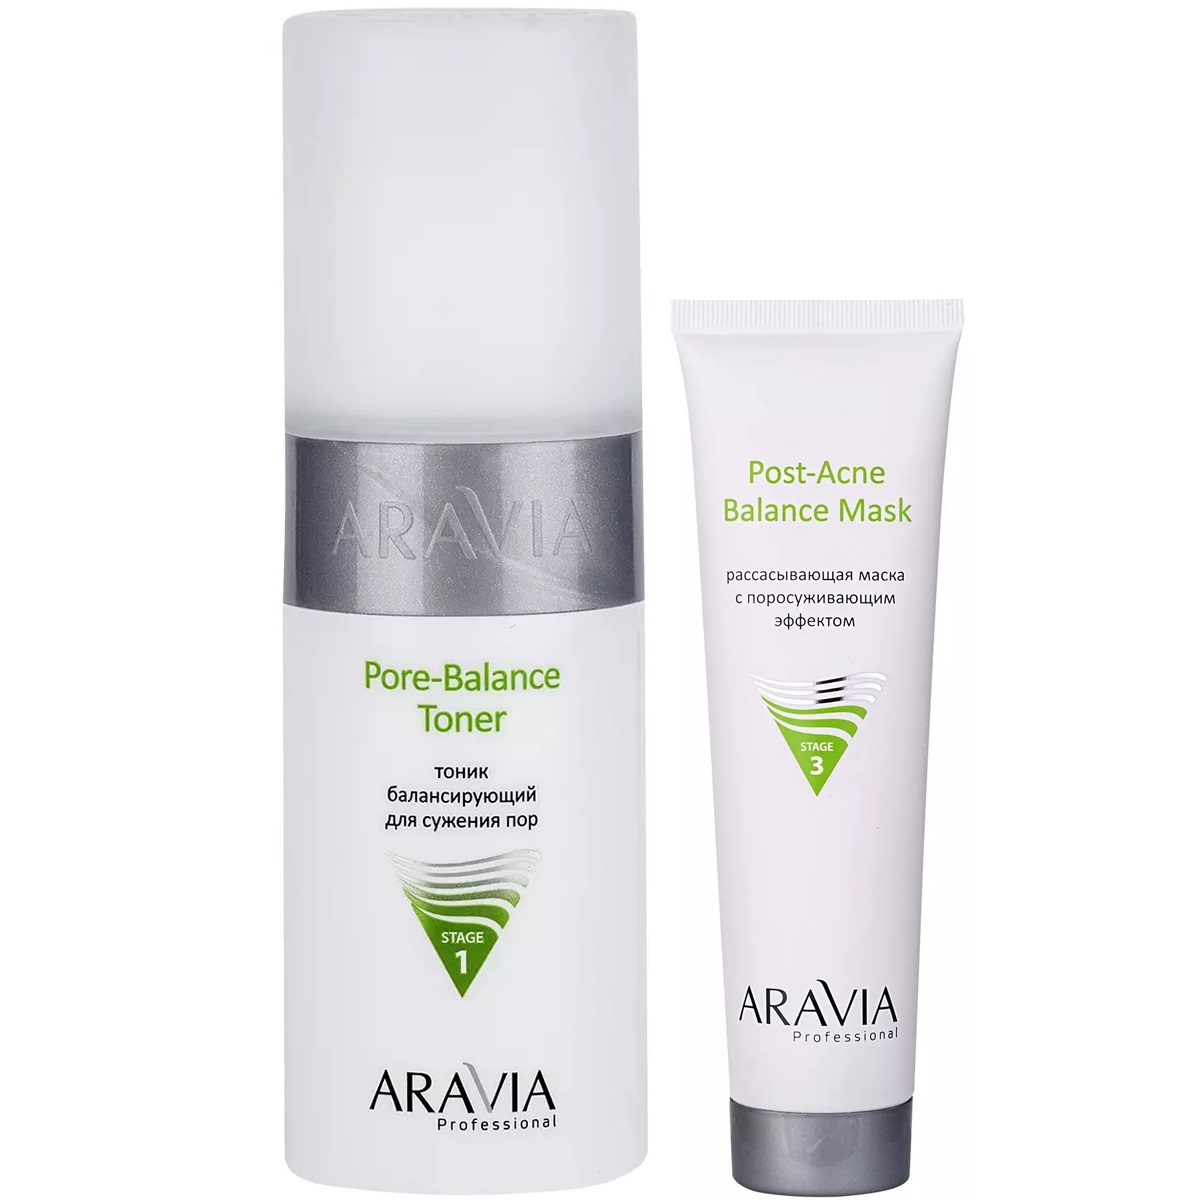 Aravia Professional Набор для проблемной кожи: маска, 100 мл + тоник, 150 мл (Aravia Professional, Уход за лицом) rere набор косметики для проблемной и жирной кожи